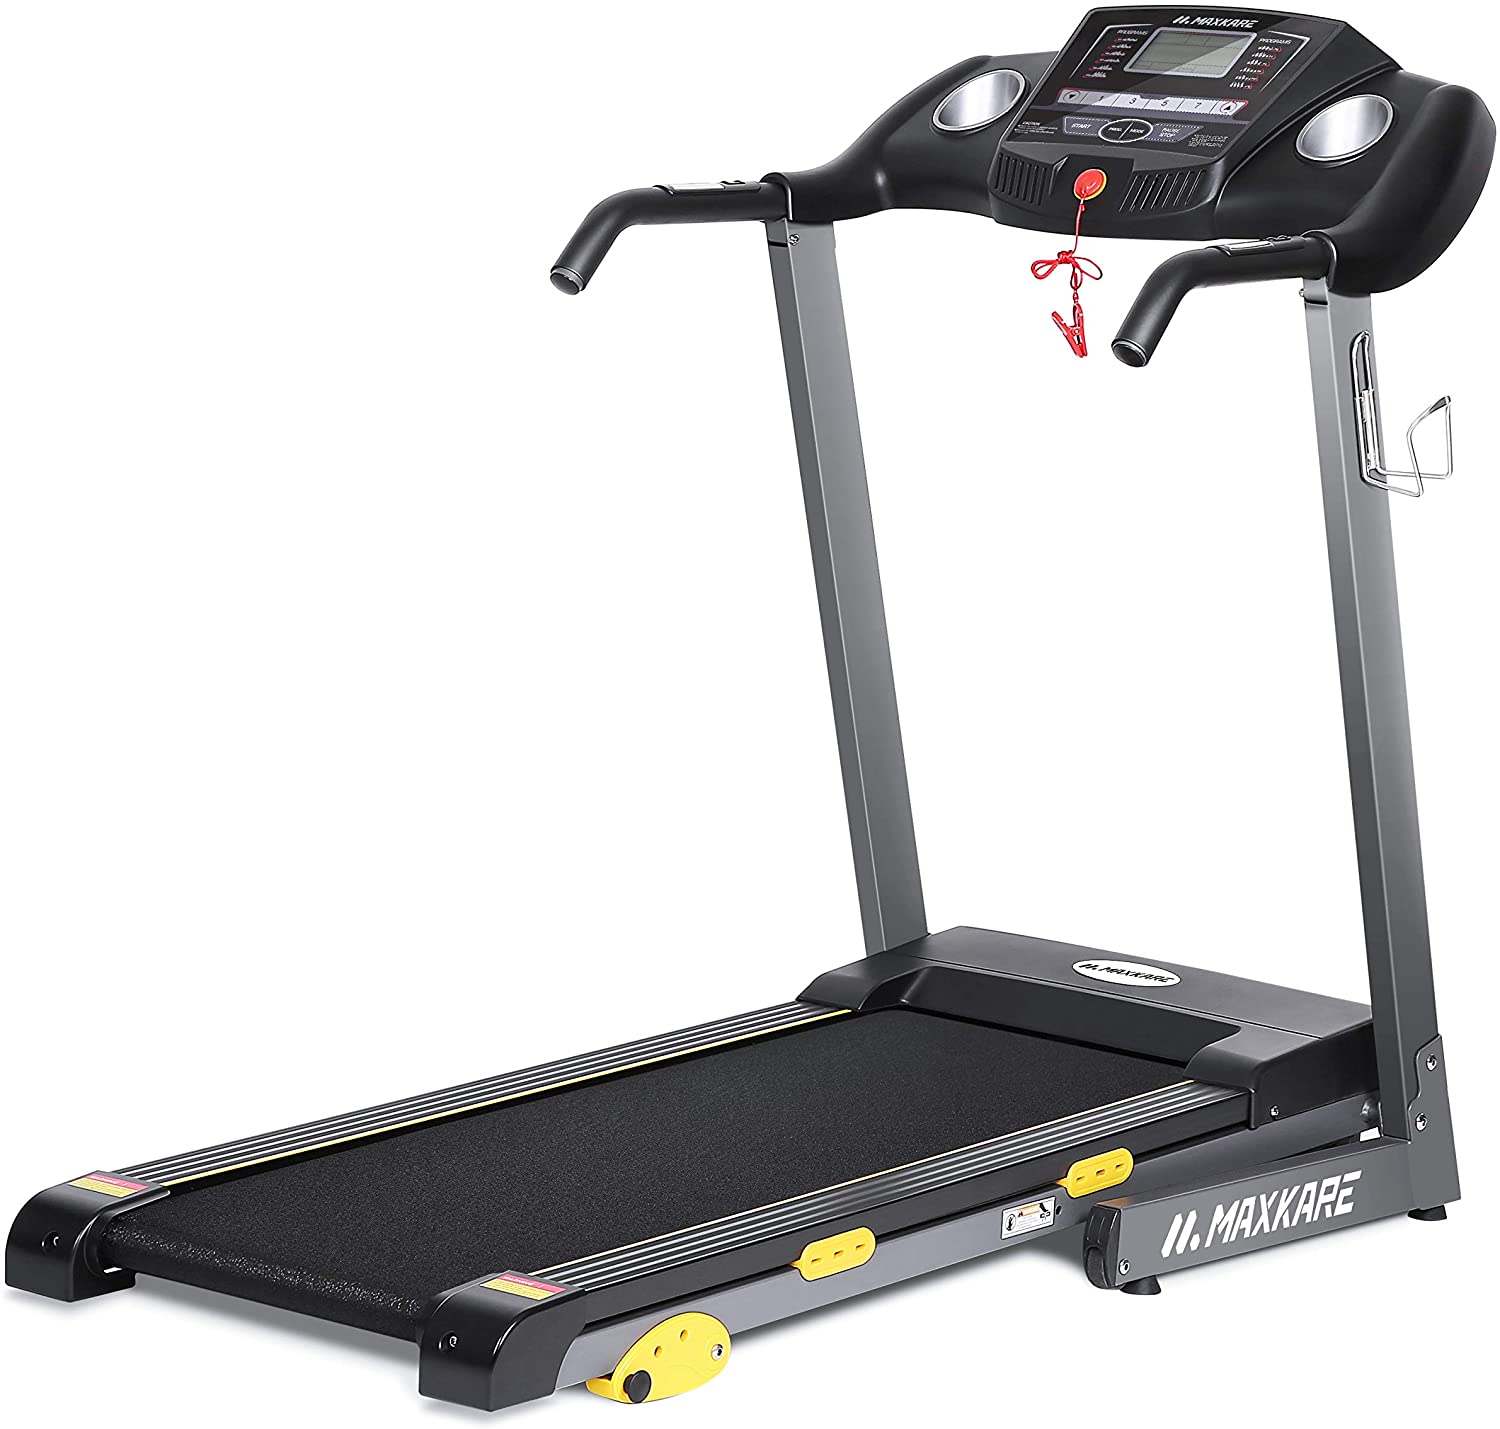 Best Treadmills For Senior Citizens